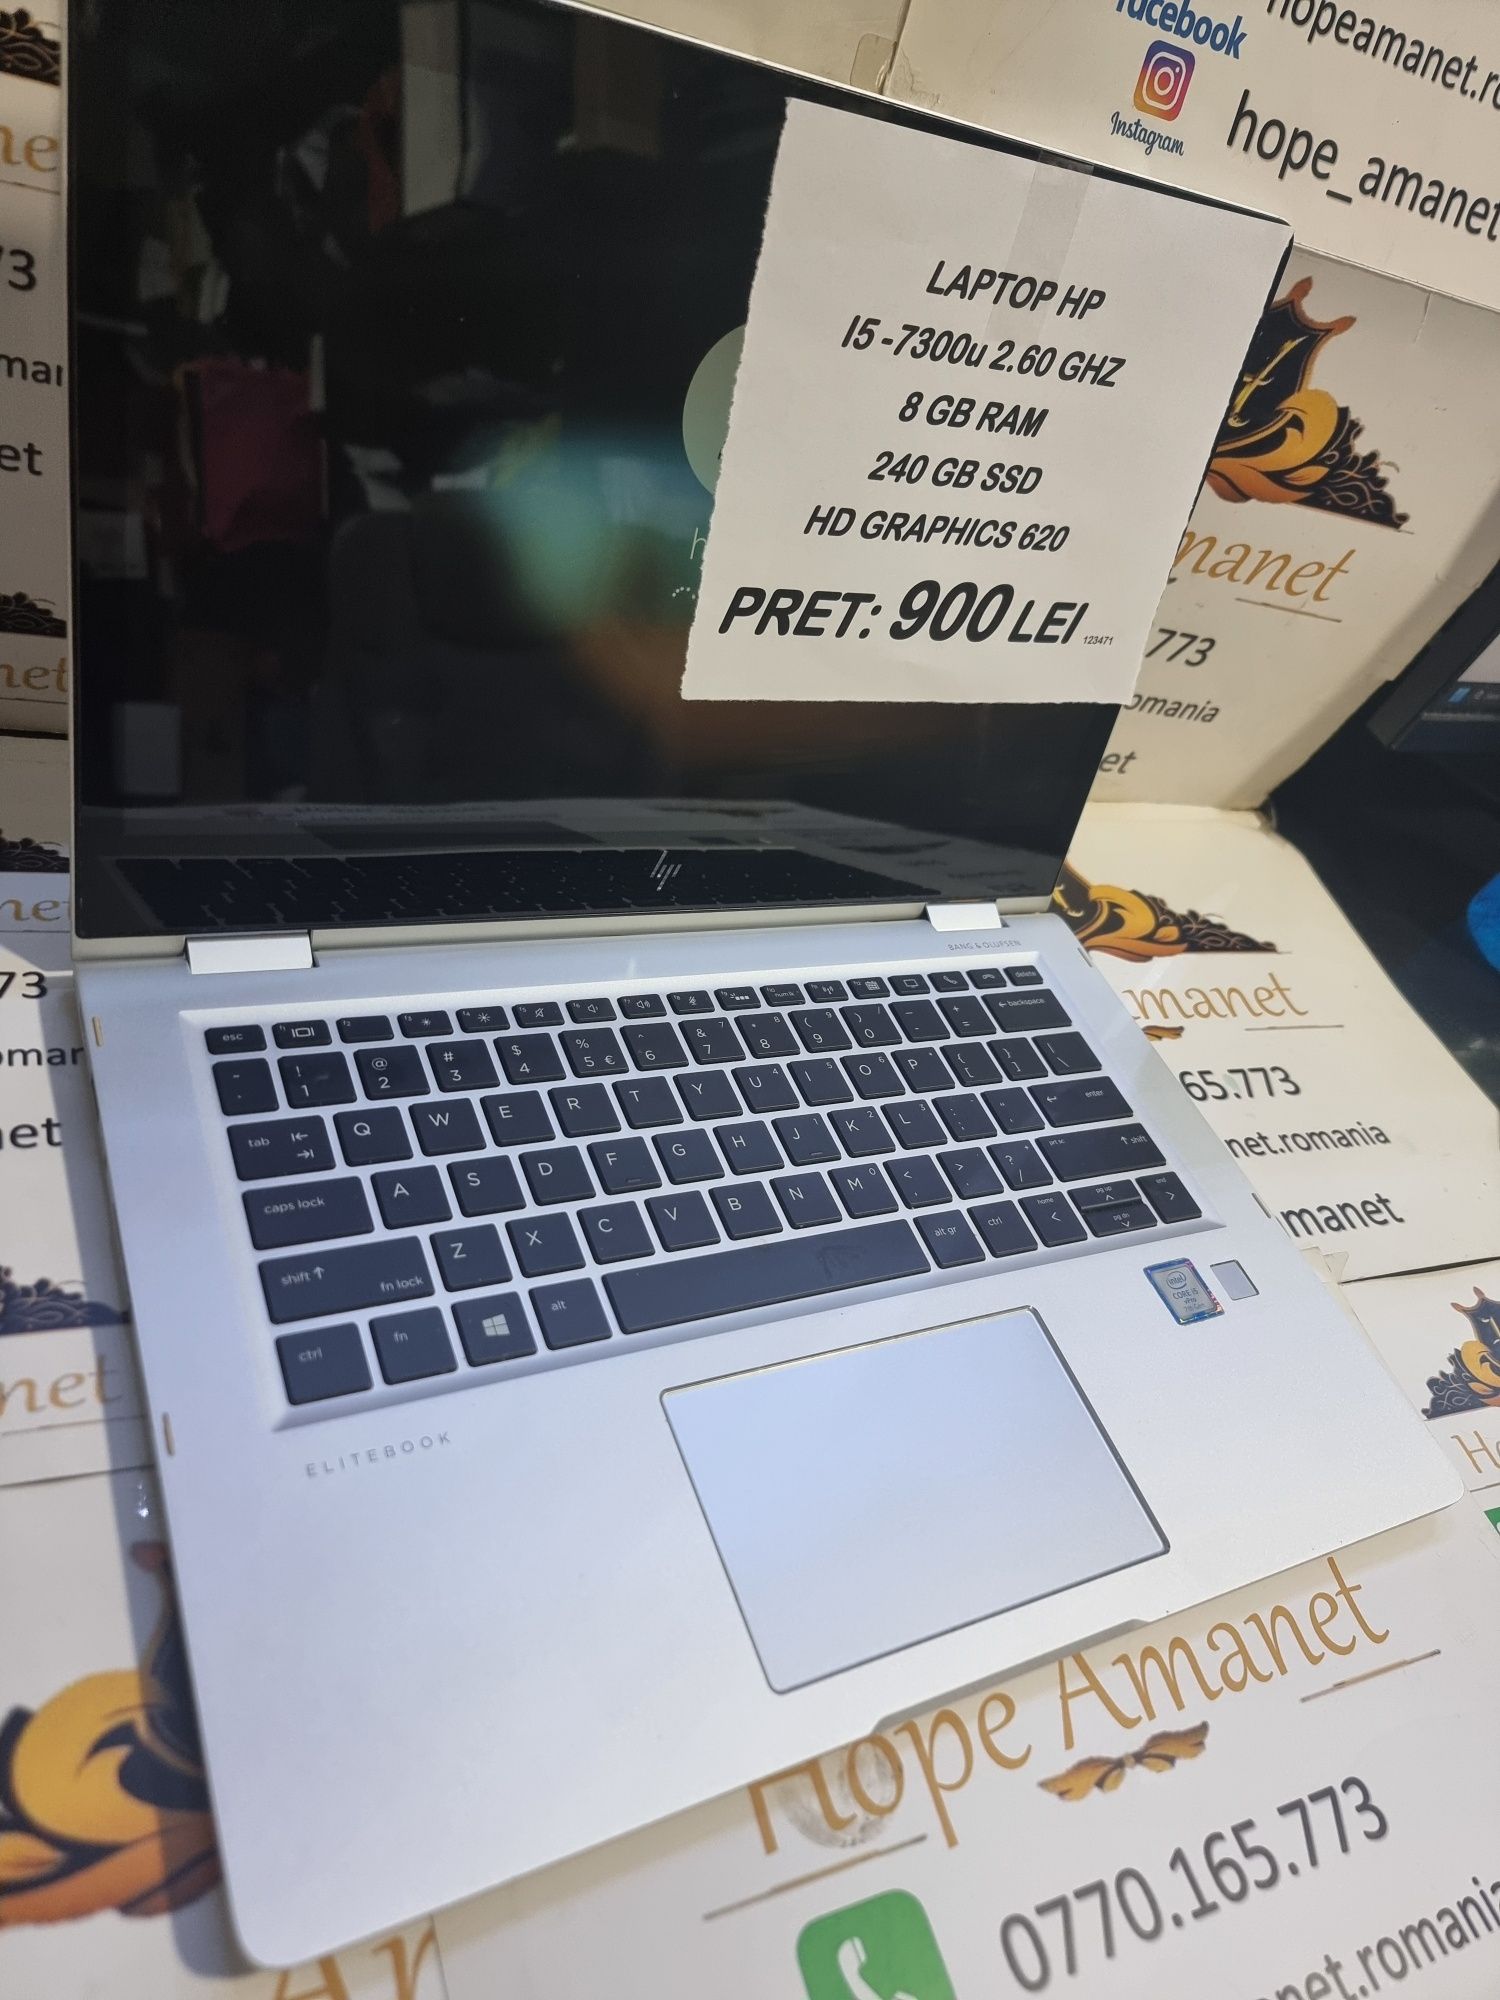 Hope Amanet P6 Laptop HP Elitebook